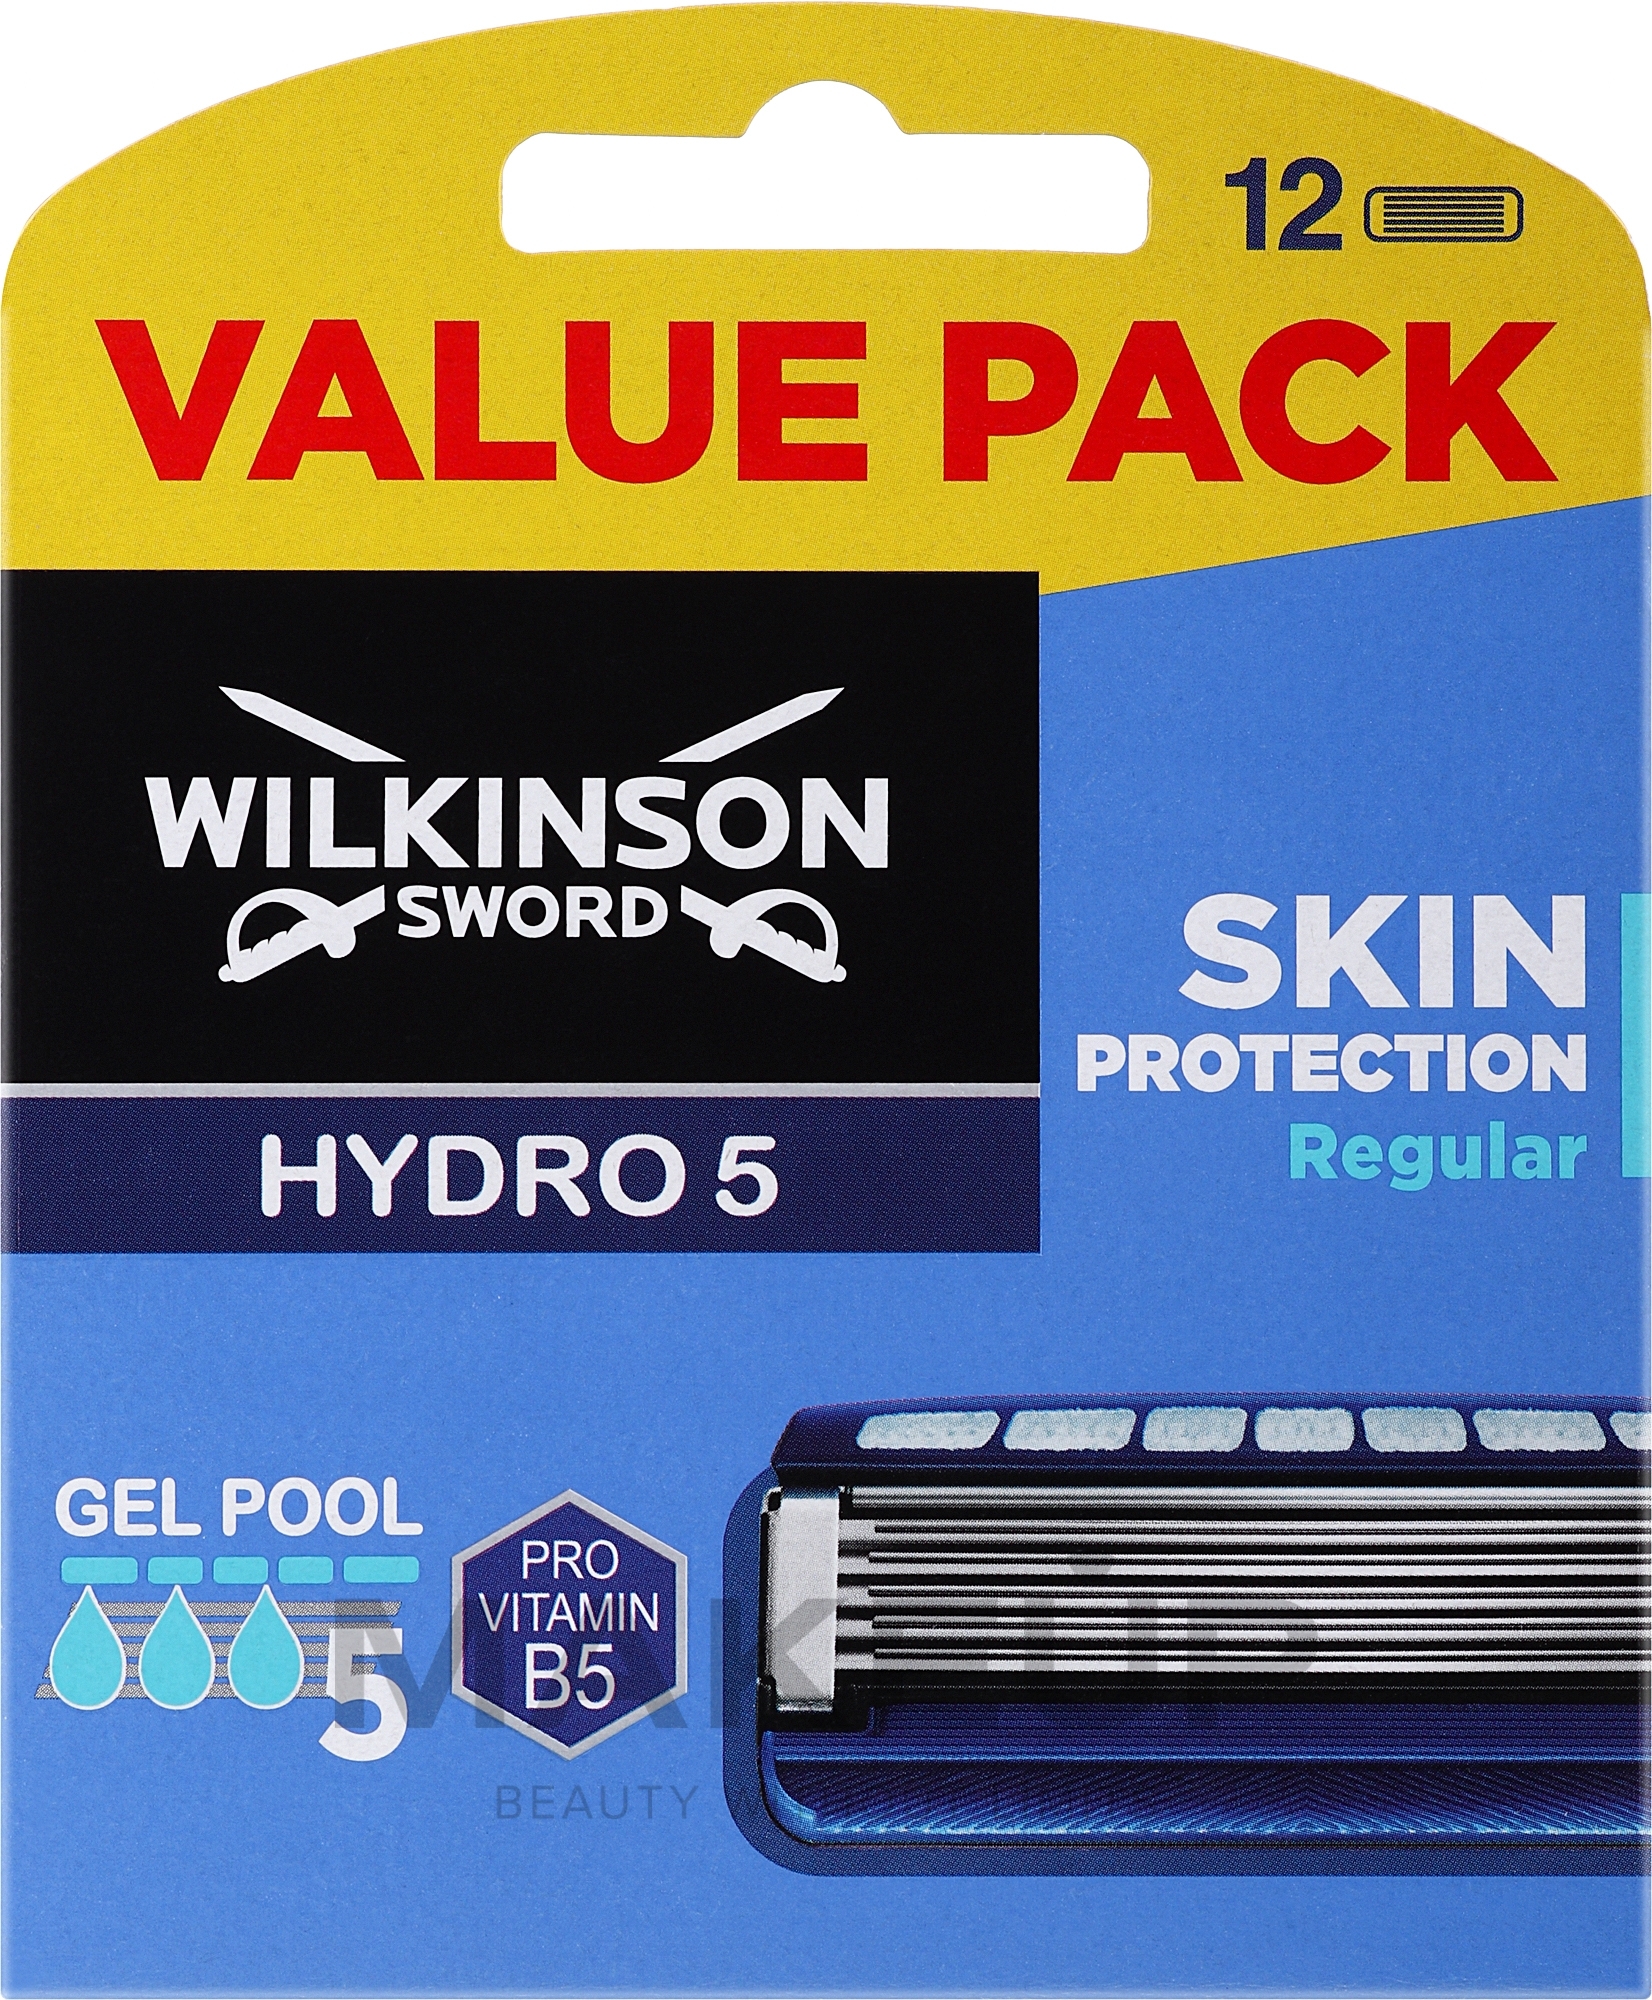 Zestaw wymiennych ostrzy Hydro 5, 12 szt. - Wilkinson Sword Hydro 5 Skin Protection Regular — Zdjęcie 12 szt.